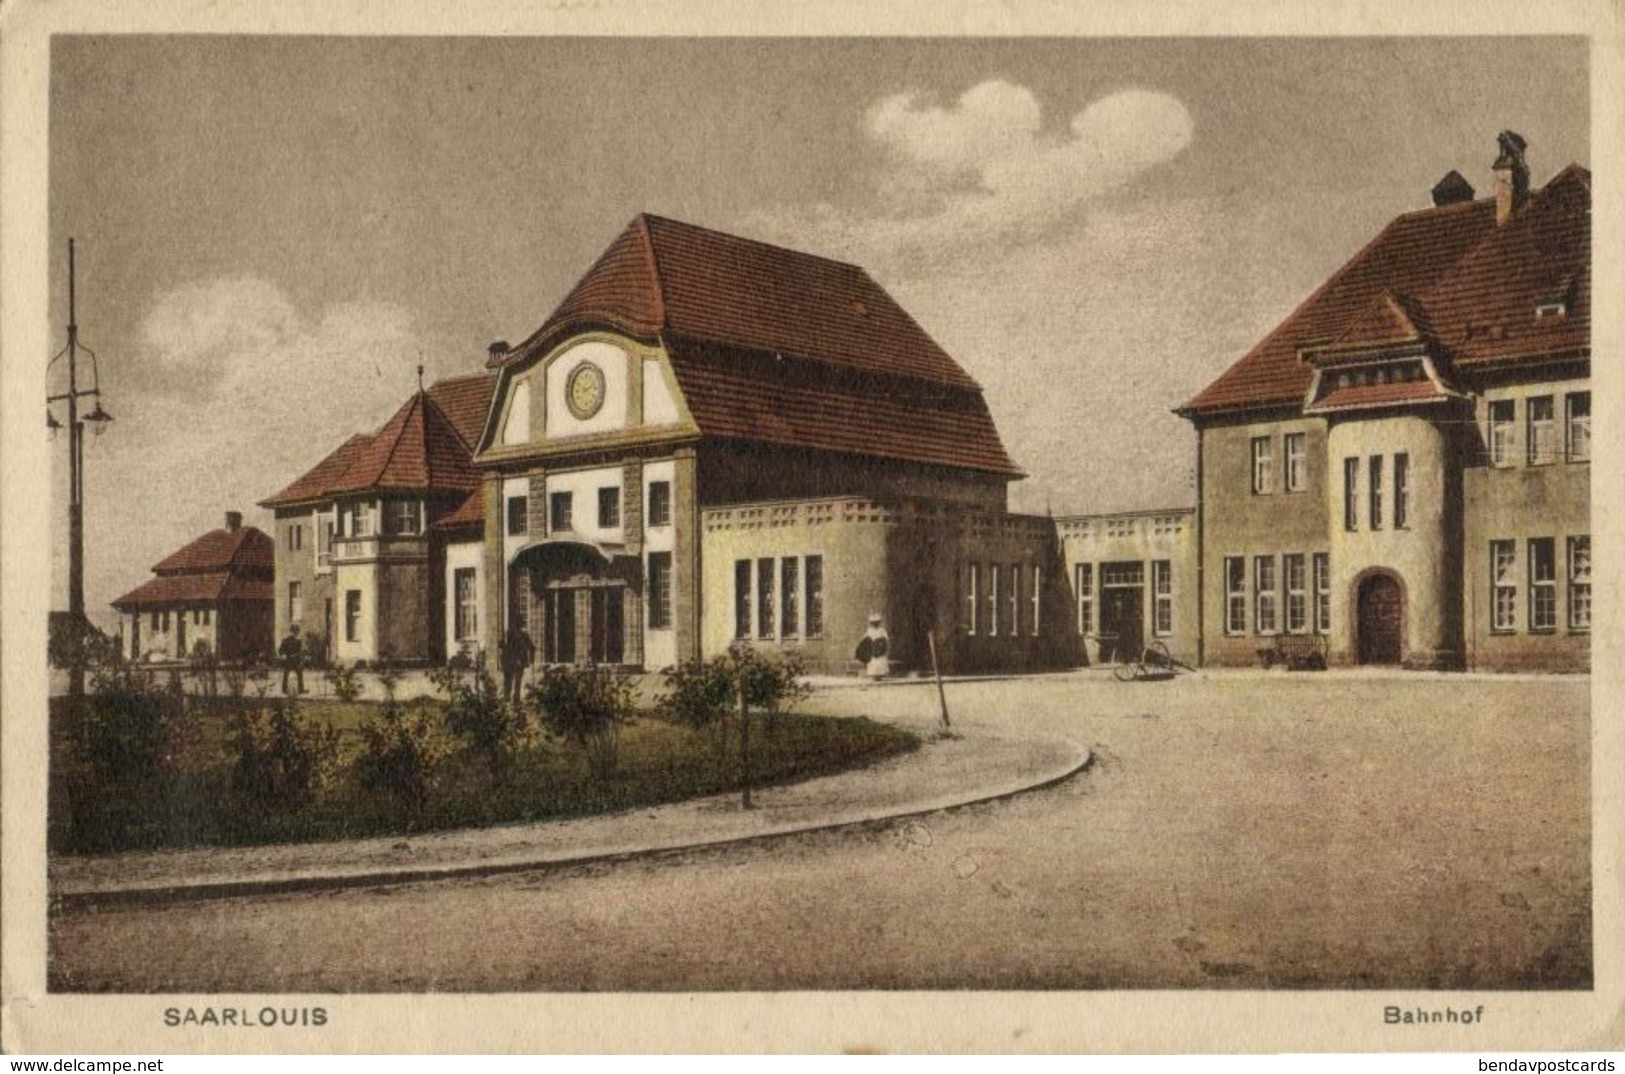 SAARLOUIS, Bahnhof (1926) AK - Kreis Saarlouis